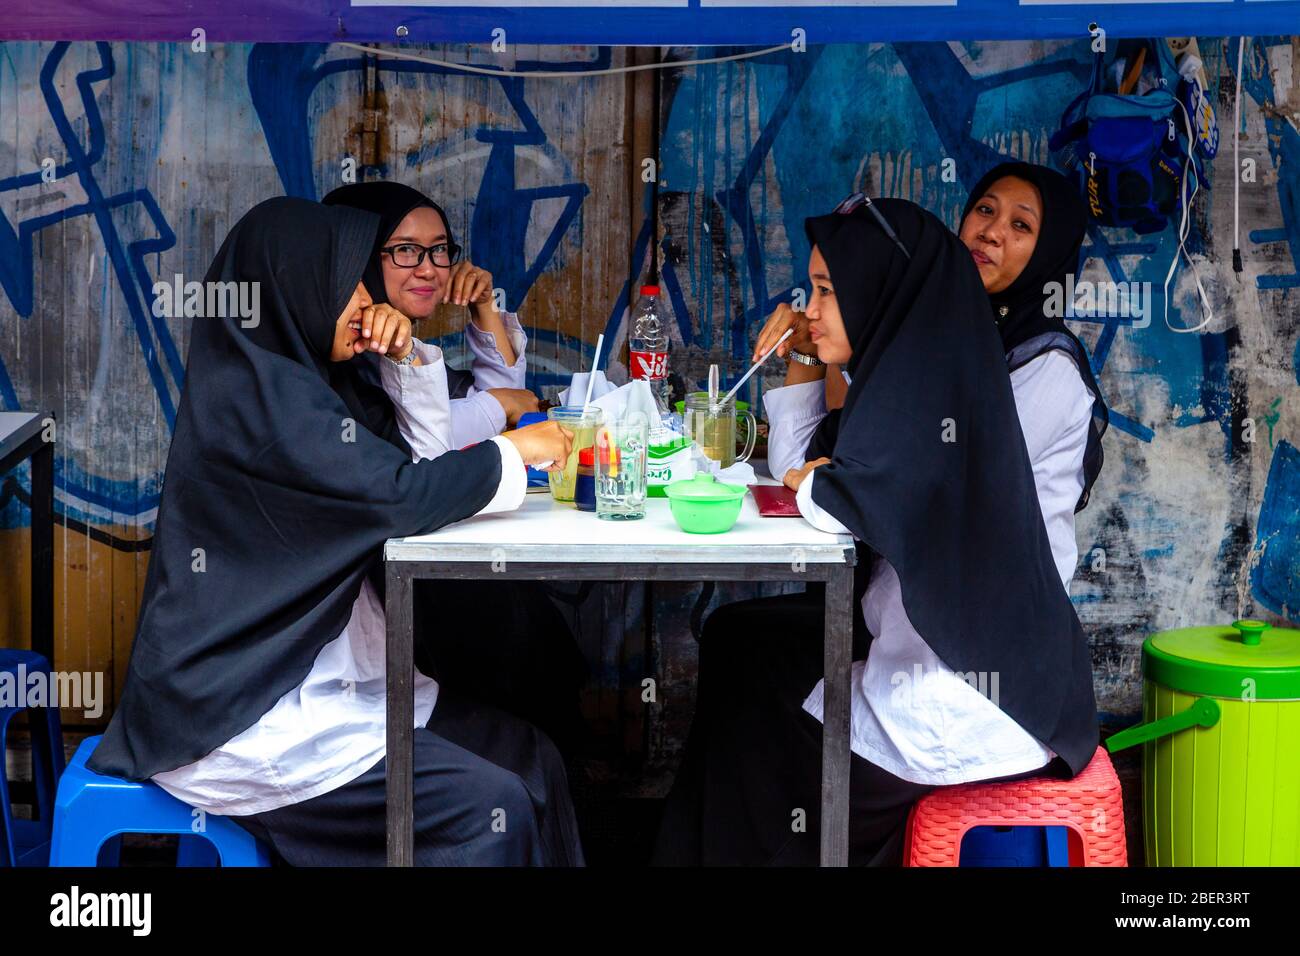 Jeunes femmes indonésiennes en buvant des boissons gazeuses au café de la rue Malioboro, Yogyakarta, Indonésie. Banque D'Images